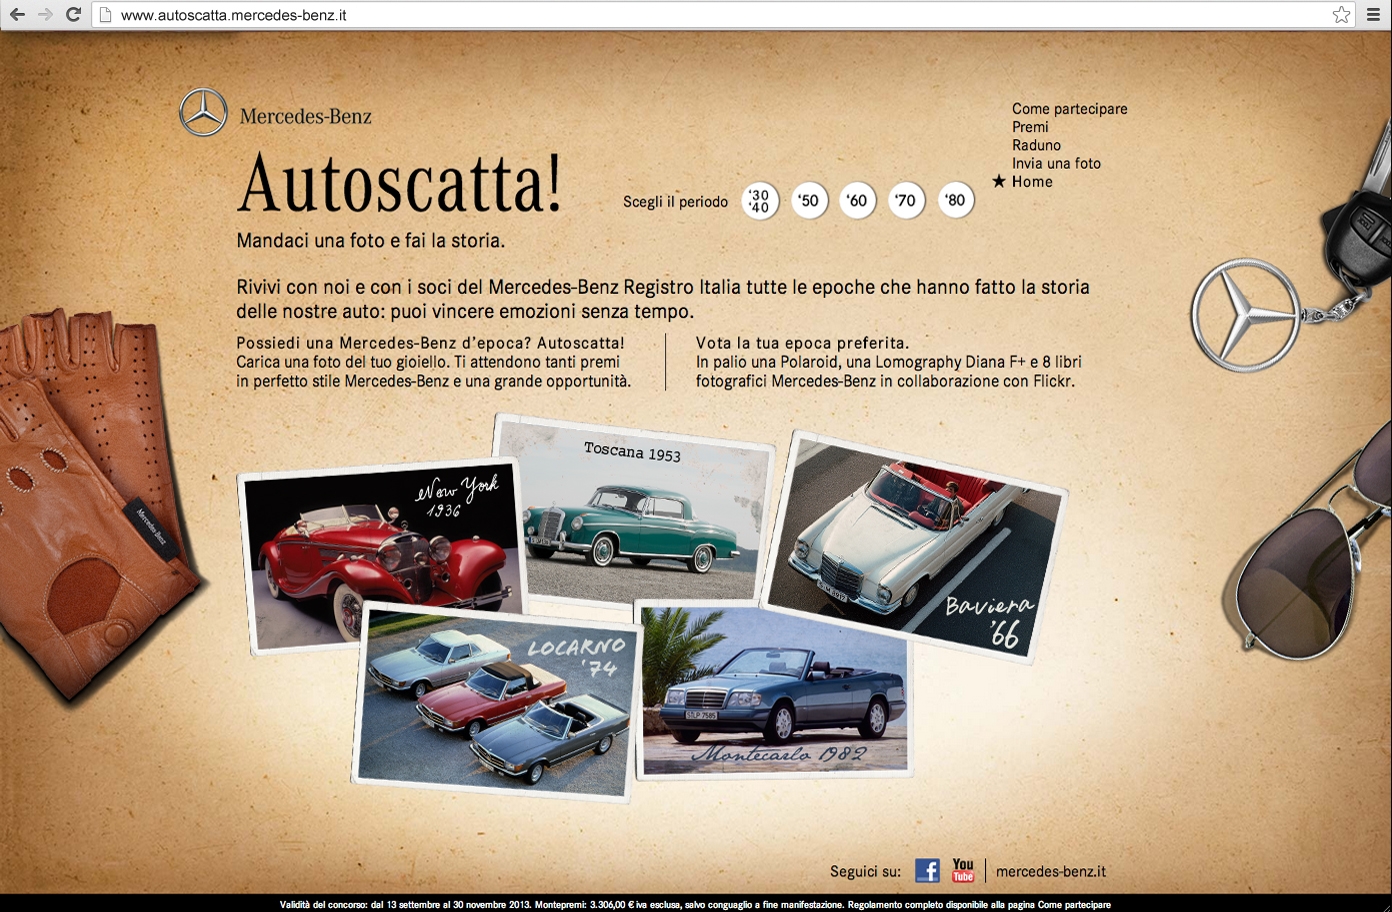 Autoscatta! il nuovo concorso online per gli appassionati di Mercedes-Benz